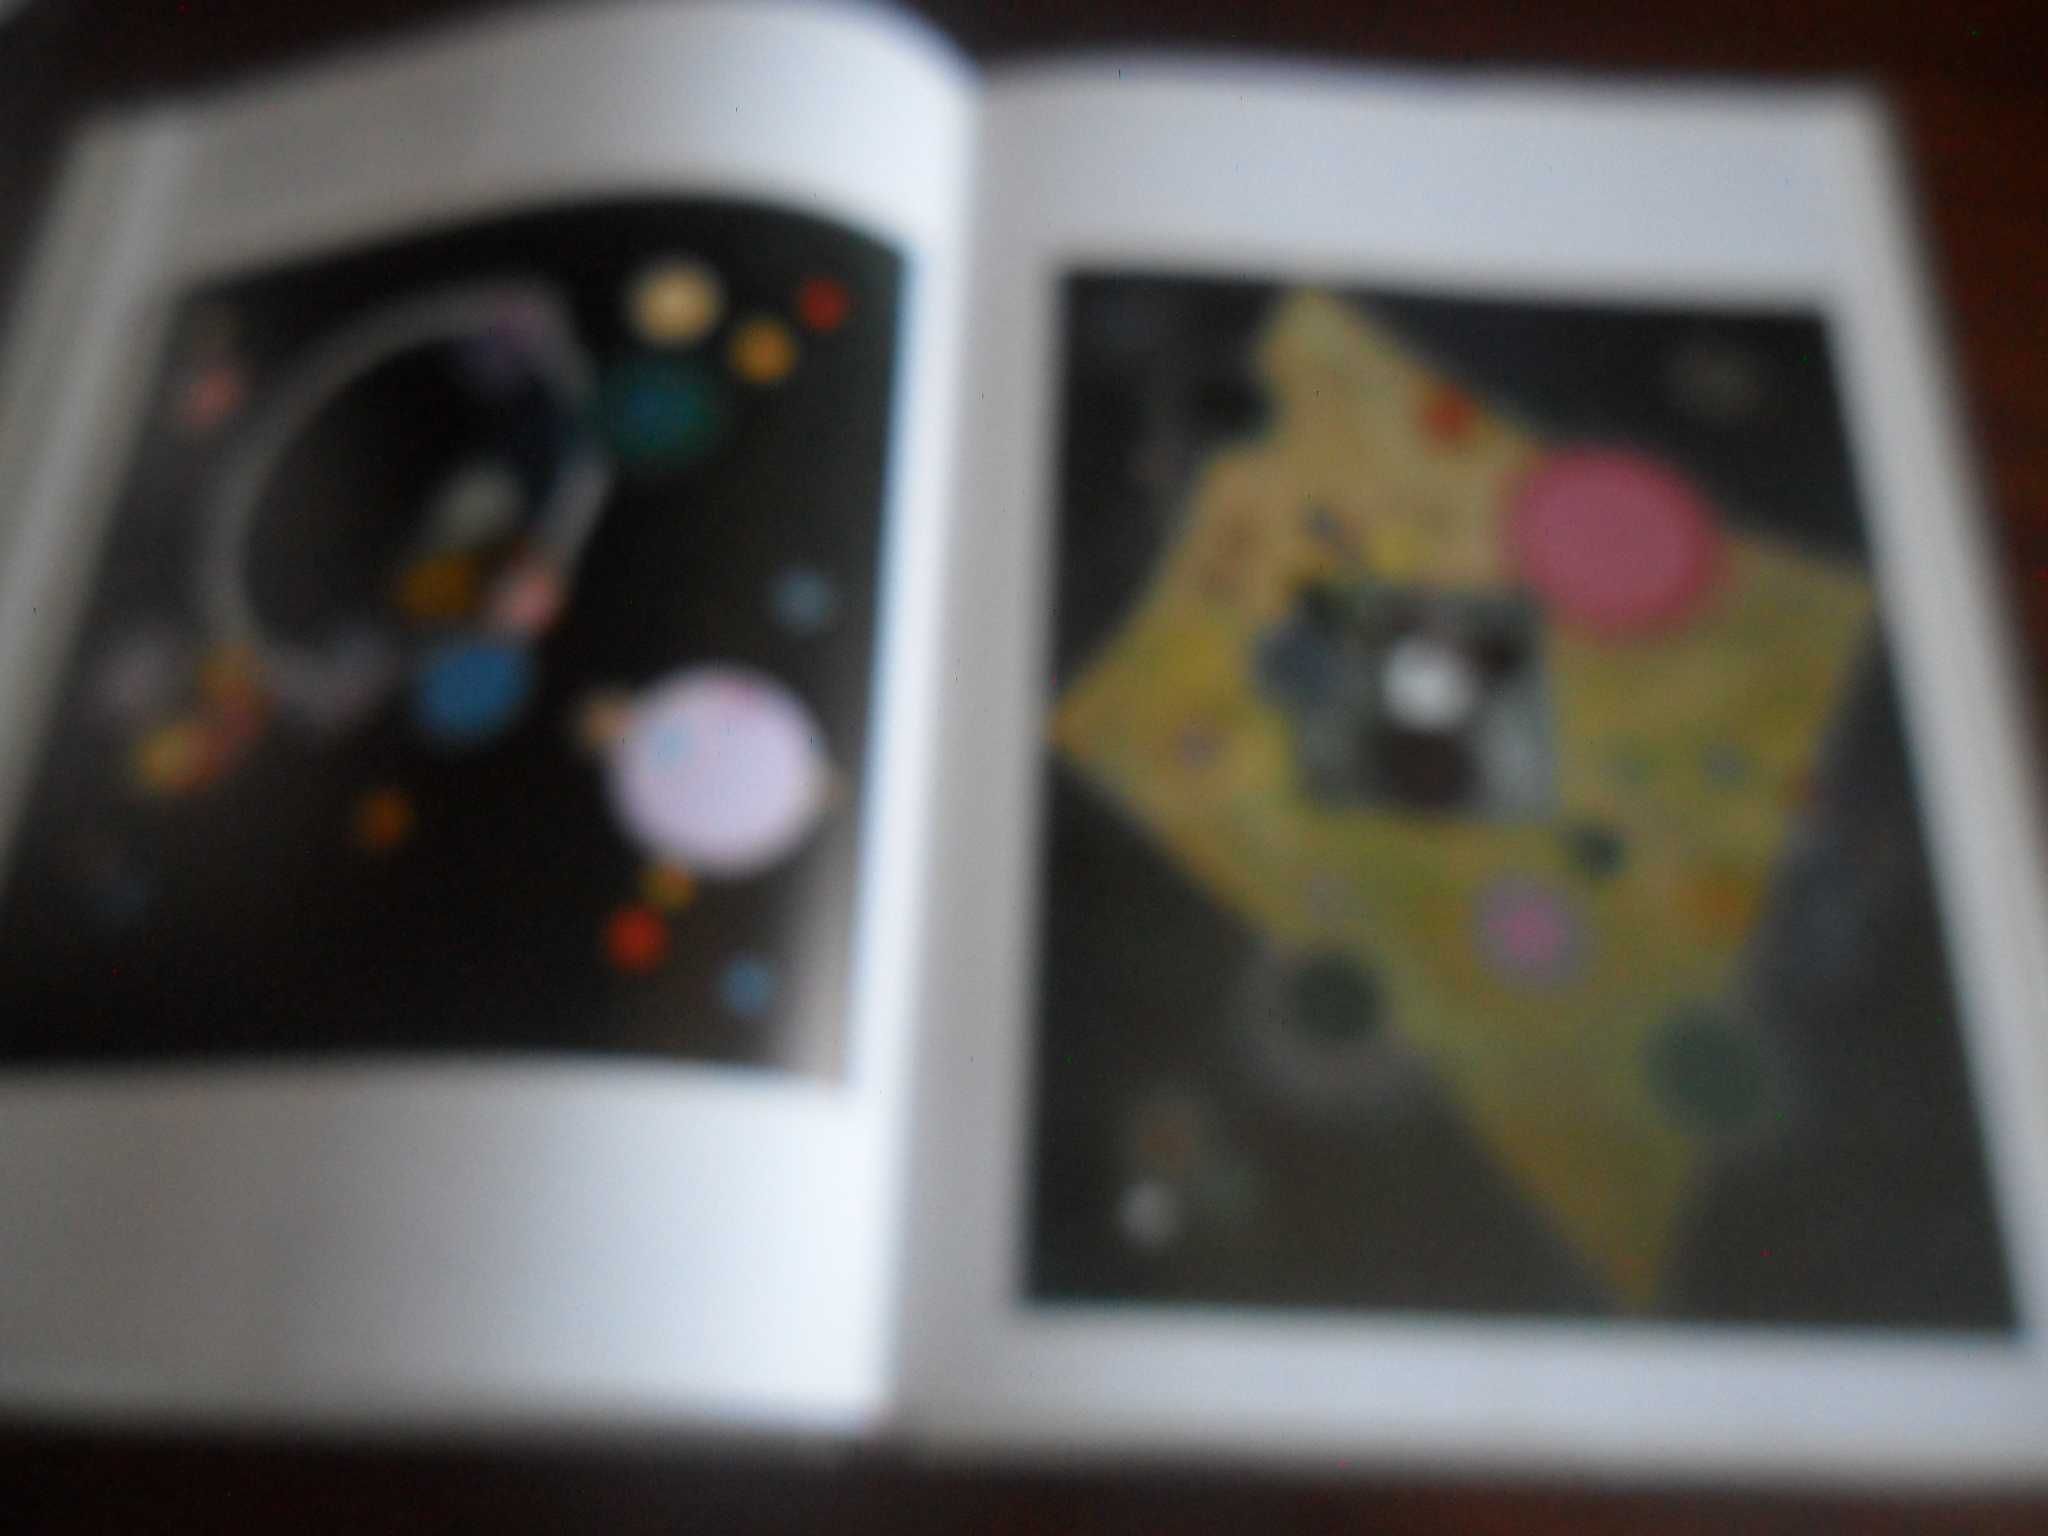 "Kandinsky" de François Le Targat - 1ª Edição de 1986